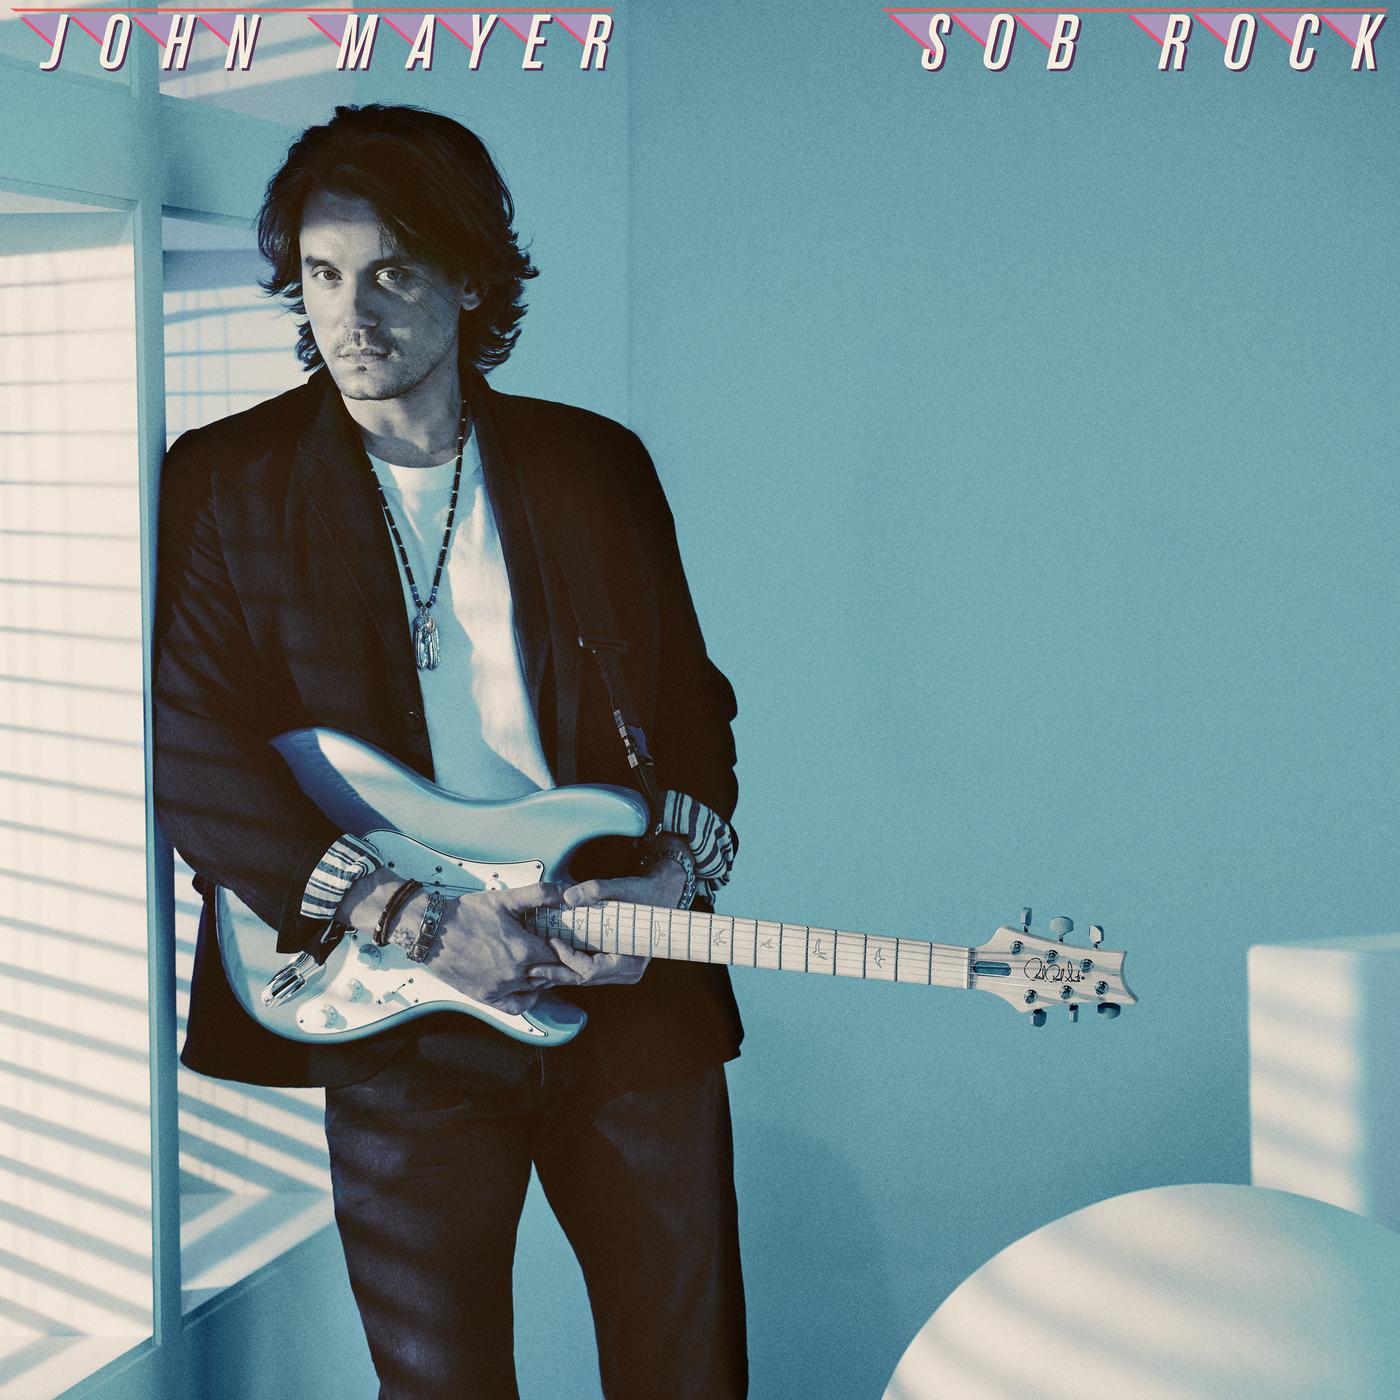 Shouldn't Matter but It Does歌词 歌手John Mayer-专辑Sob Rock-单曲《Shouldn't Matter but It Does》LRC歌词下载